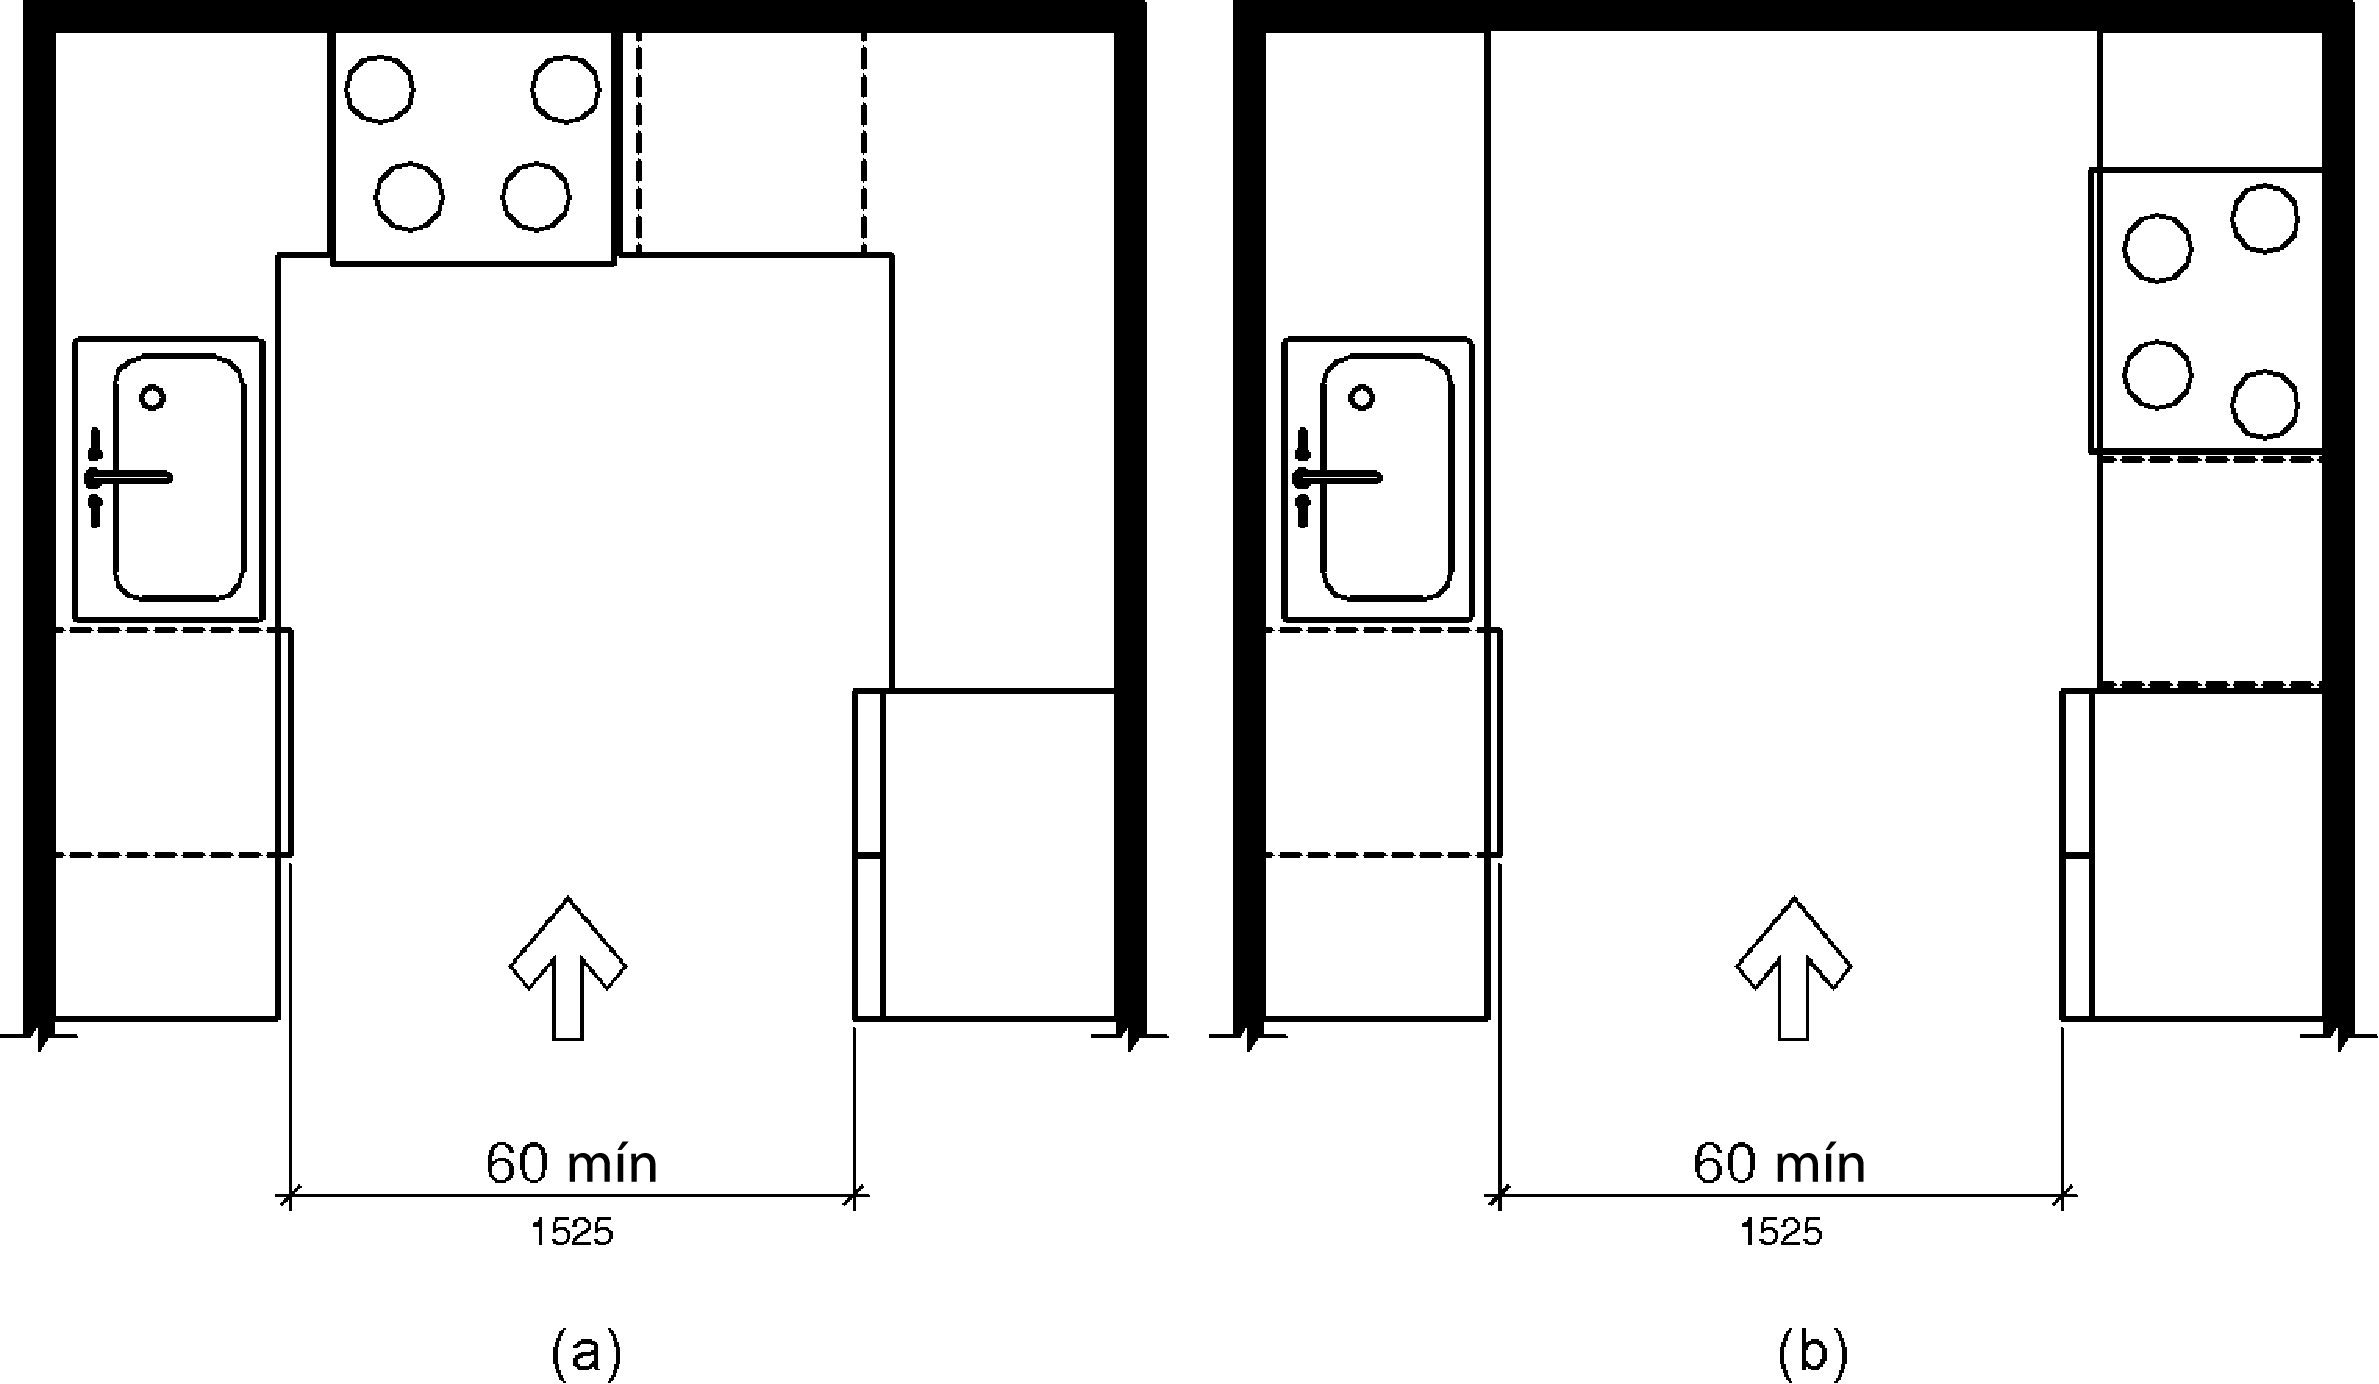 La figura (a) es una vista plana de una cocina con electrodomésticos y gabinetes en tres lados.  La figura (b) es una vista en planta de una cocina con electrodomésticos y gabinetes en dos opuestos con una pared en la parte trasera.  El ancho de la abertura de entrada de la cocina es de 60 pulgadas (1525 mm) como mínimo